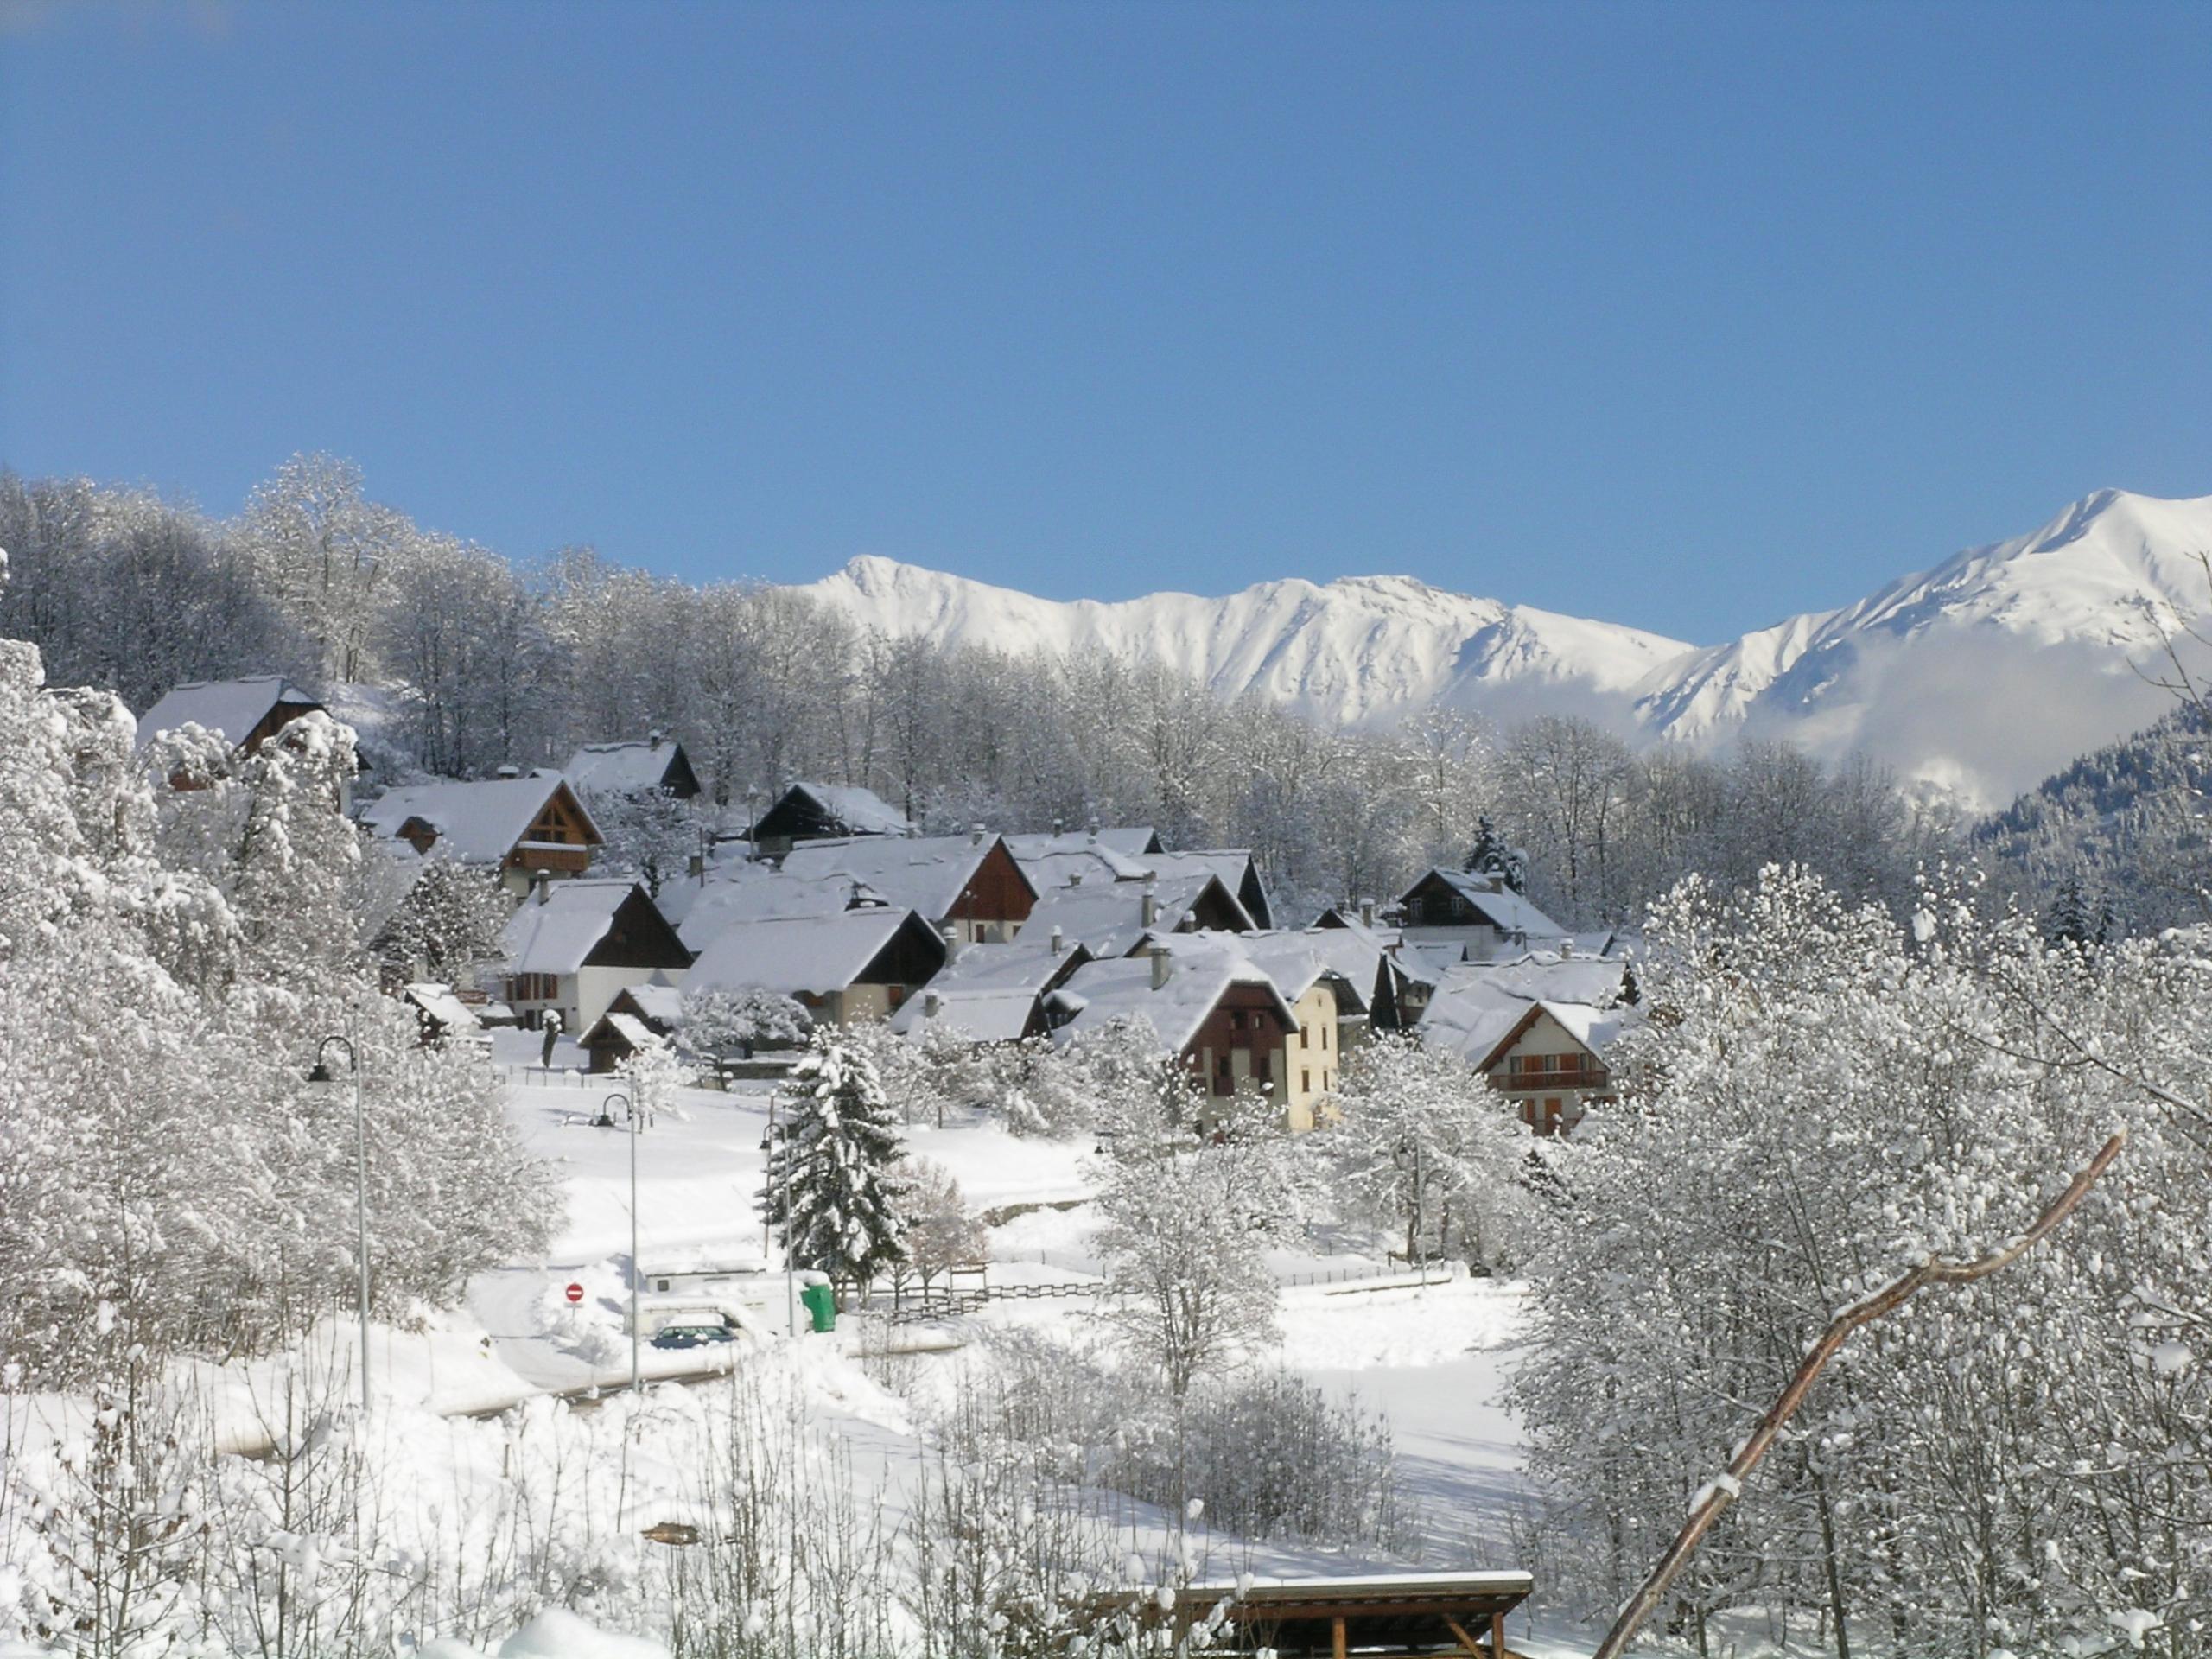 estacion esqui Saint Colomban des Villards